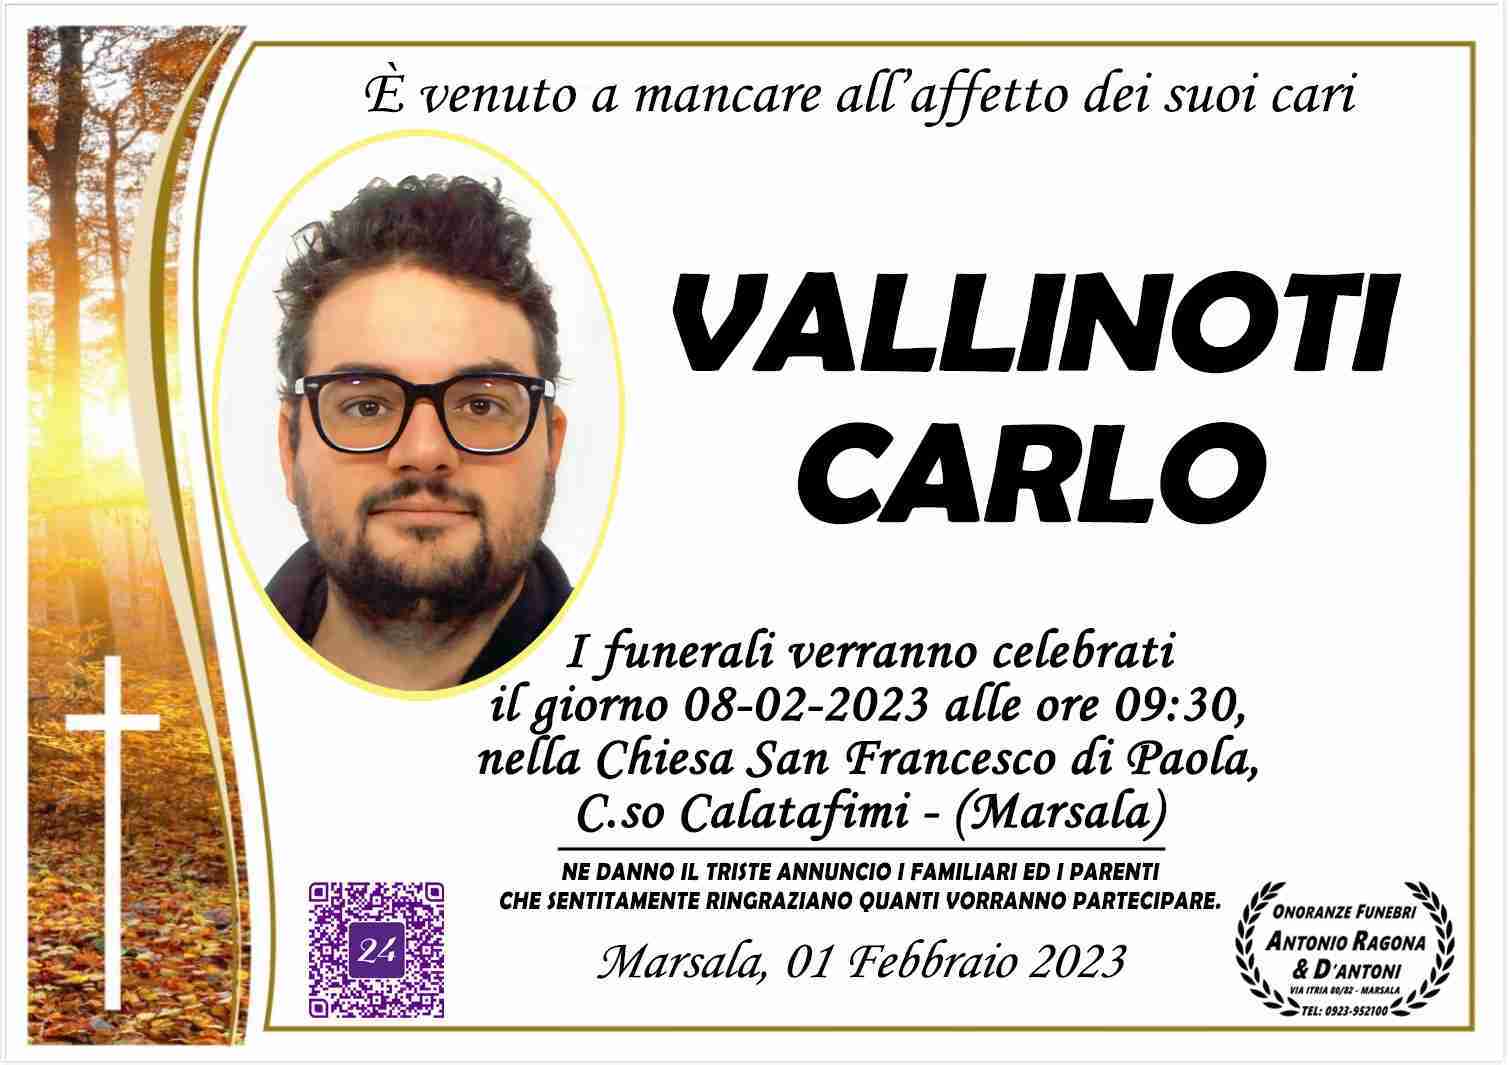 Carlo Vallinoti